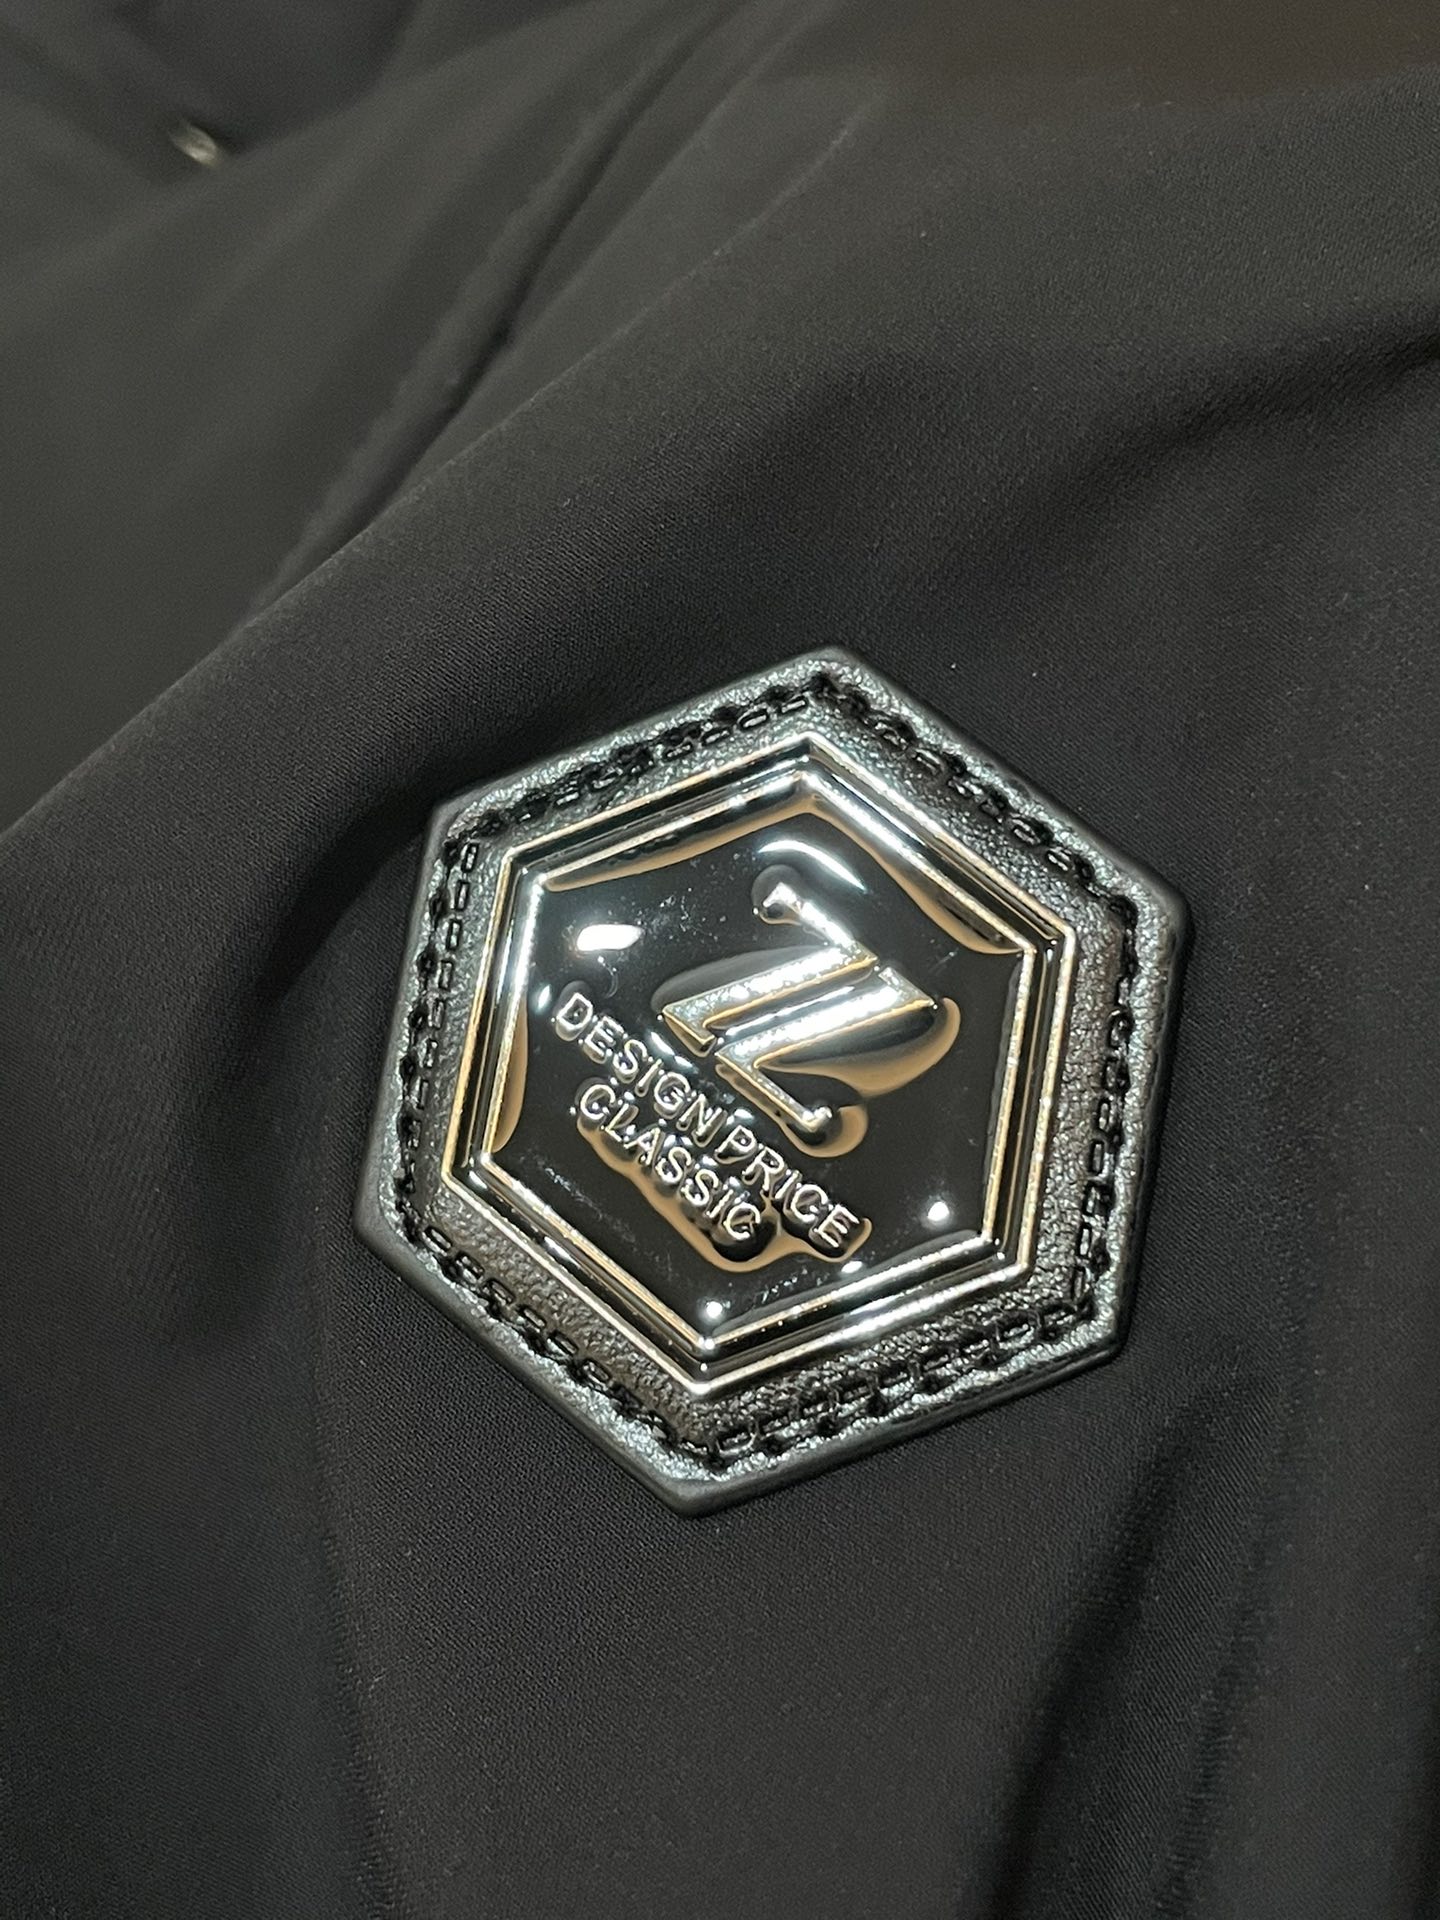 杰尼亚24ss风衣系男装高端梭织外套高端精品系列贸易公司渠道订单官网专柜在售系列业内独家首发经典主线里最